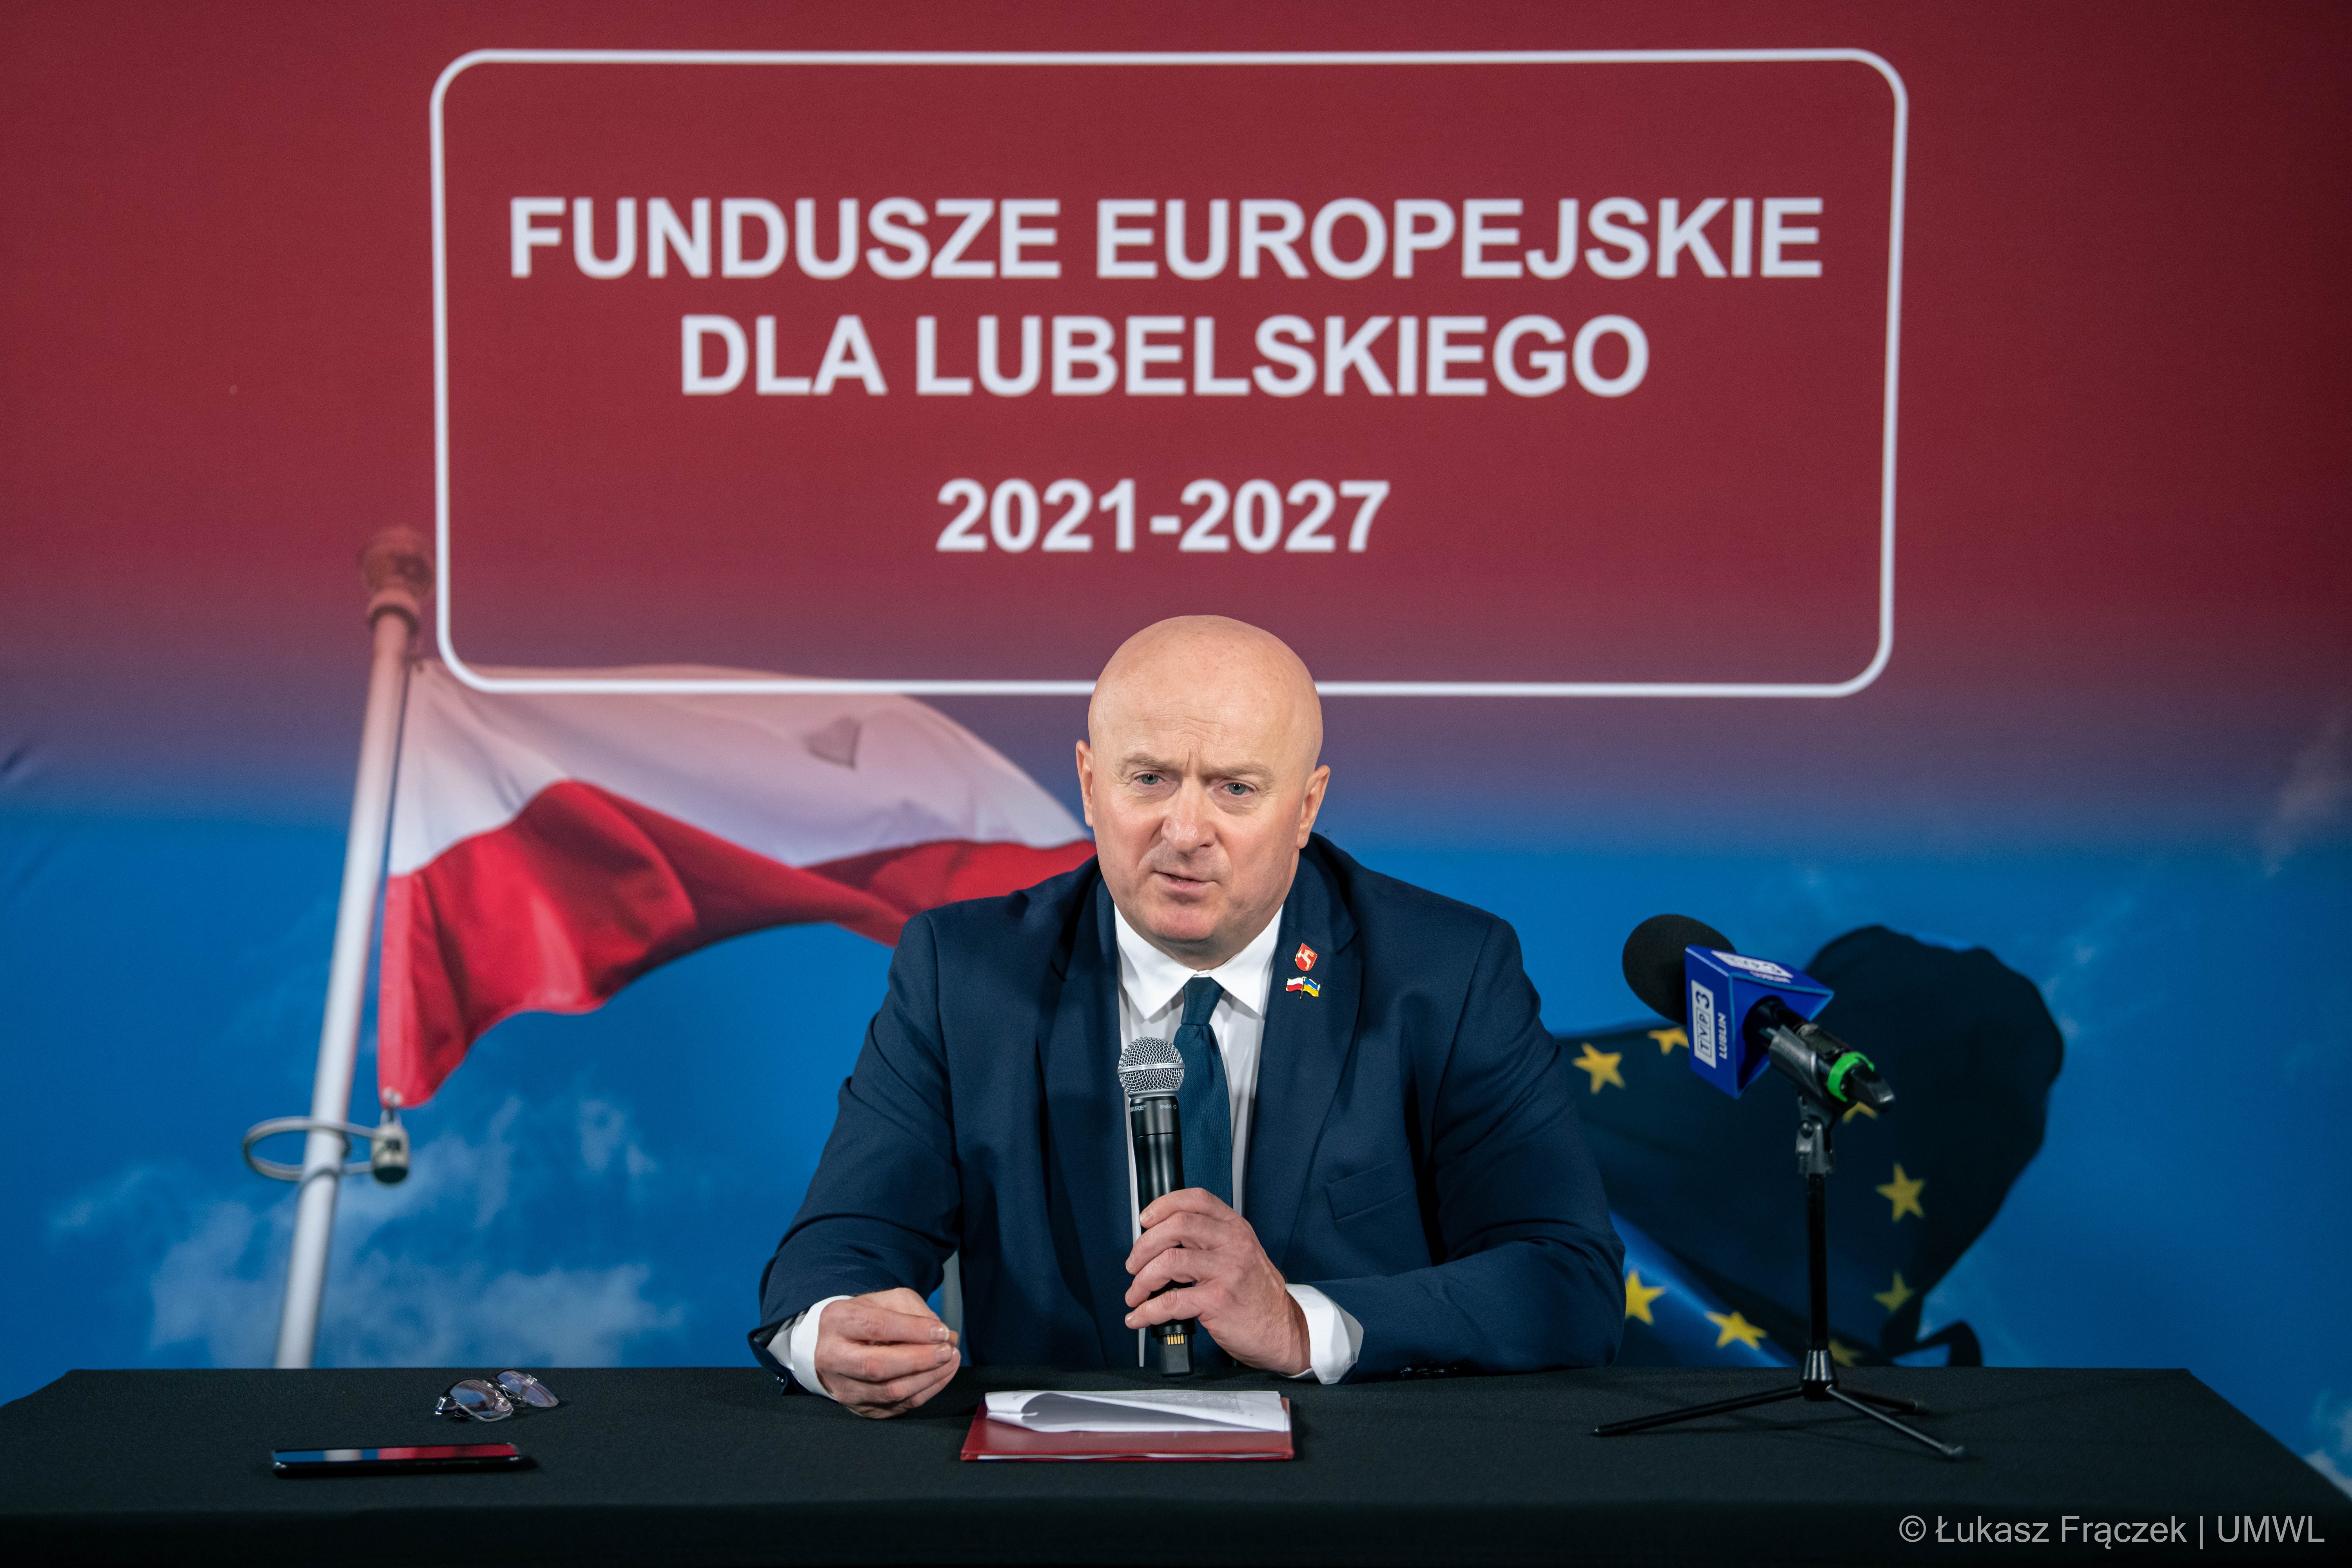 Czekamy na zatwierdzenie projektu Fundusze Europejskie dla Lubelskiego 2021-2027